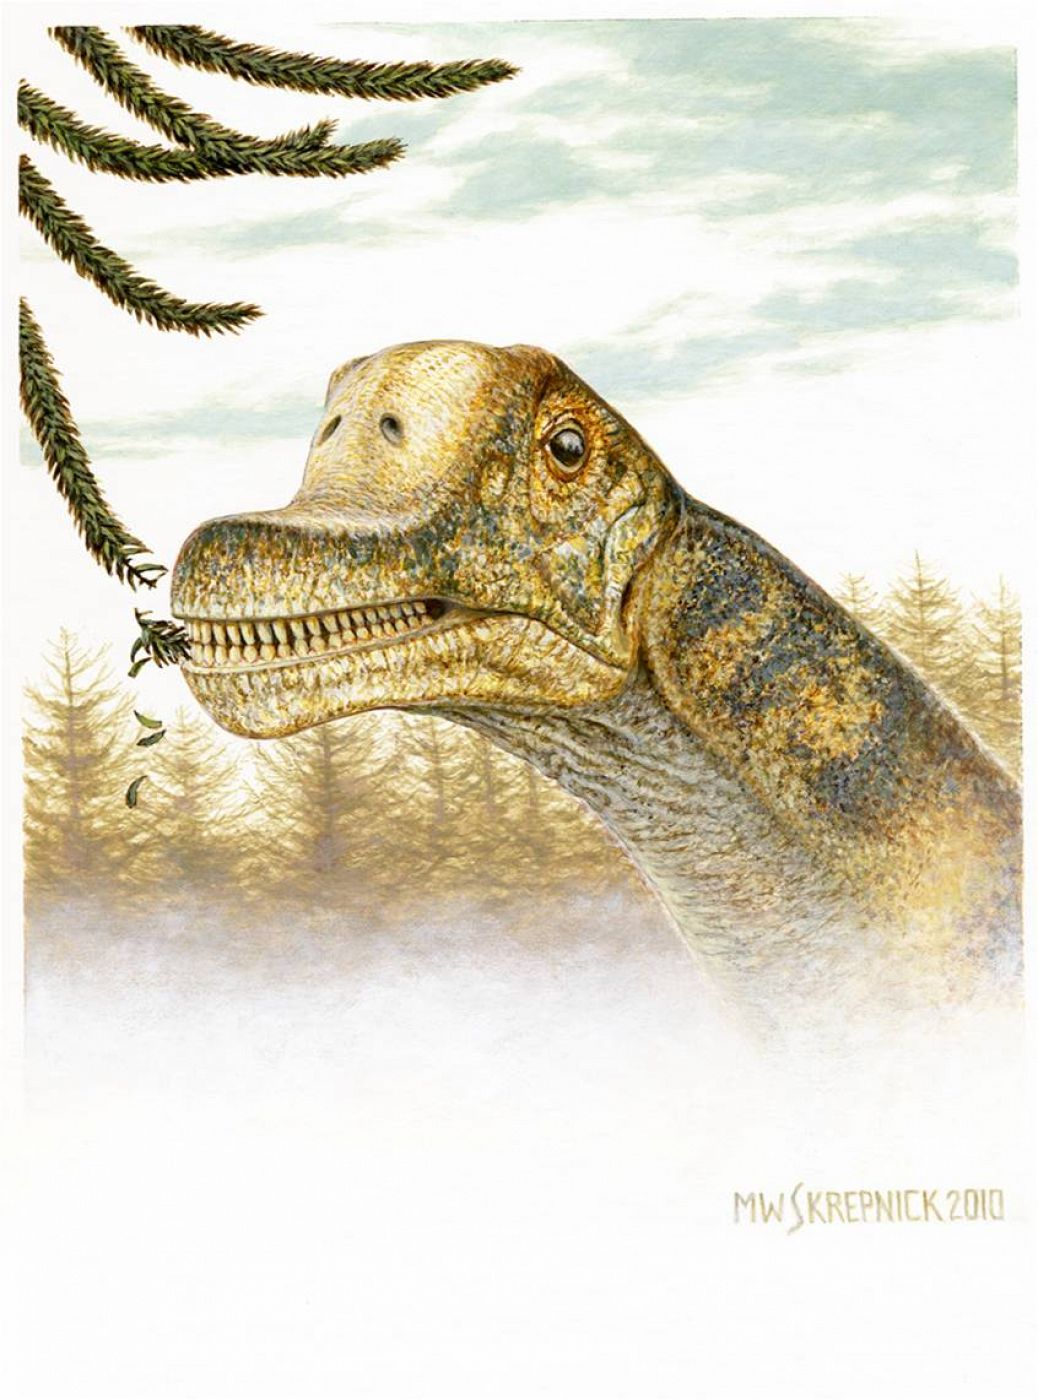 Los saurópodos son los animales terrestres más grandes, largos y pesados que han habitado la Tierra.